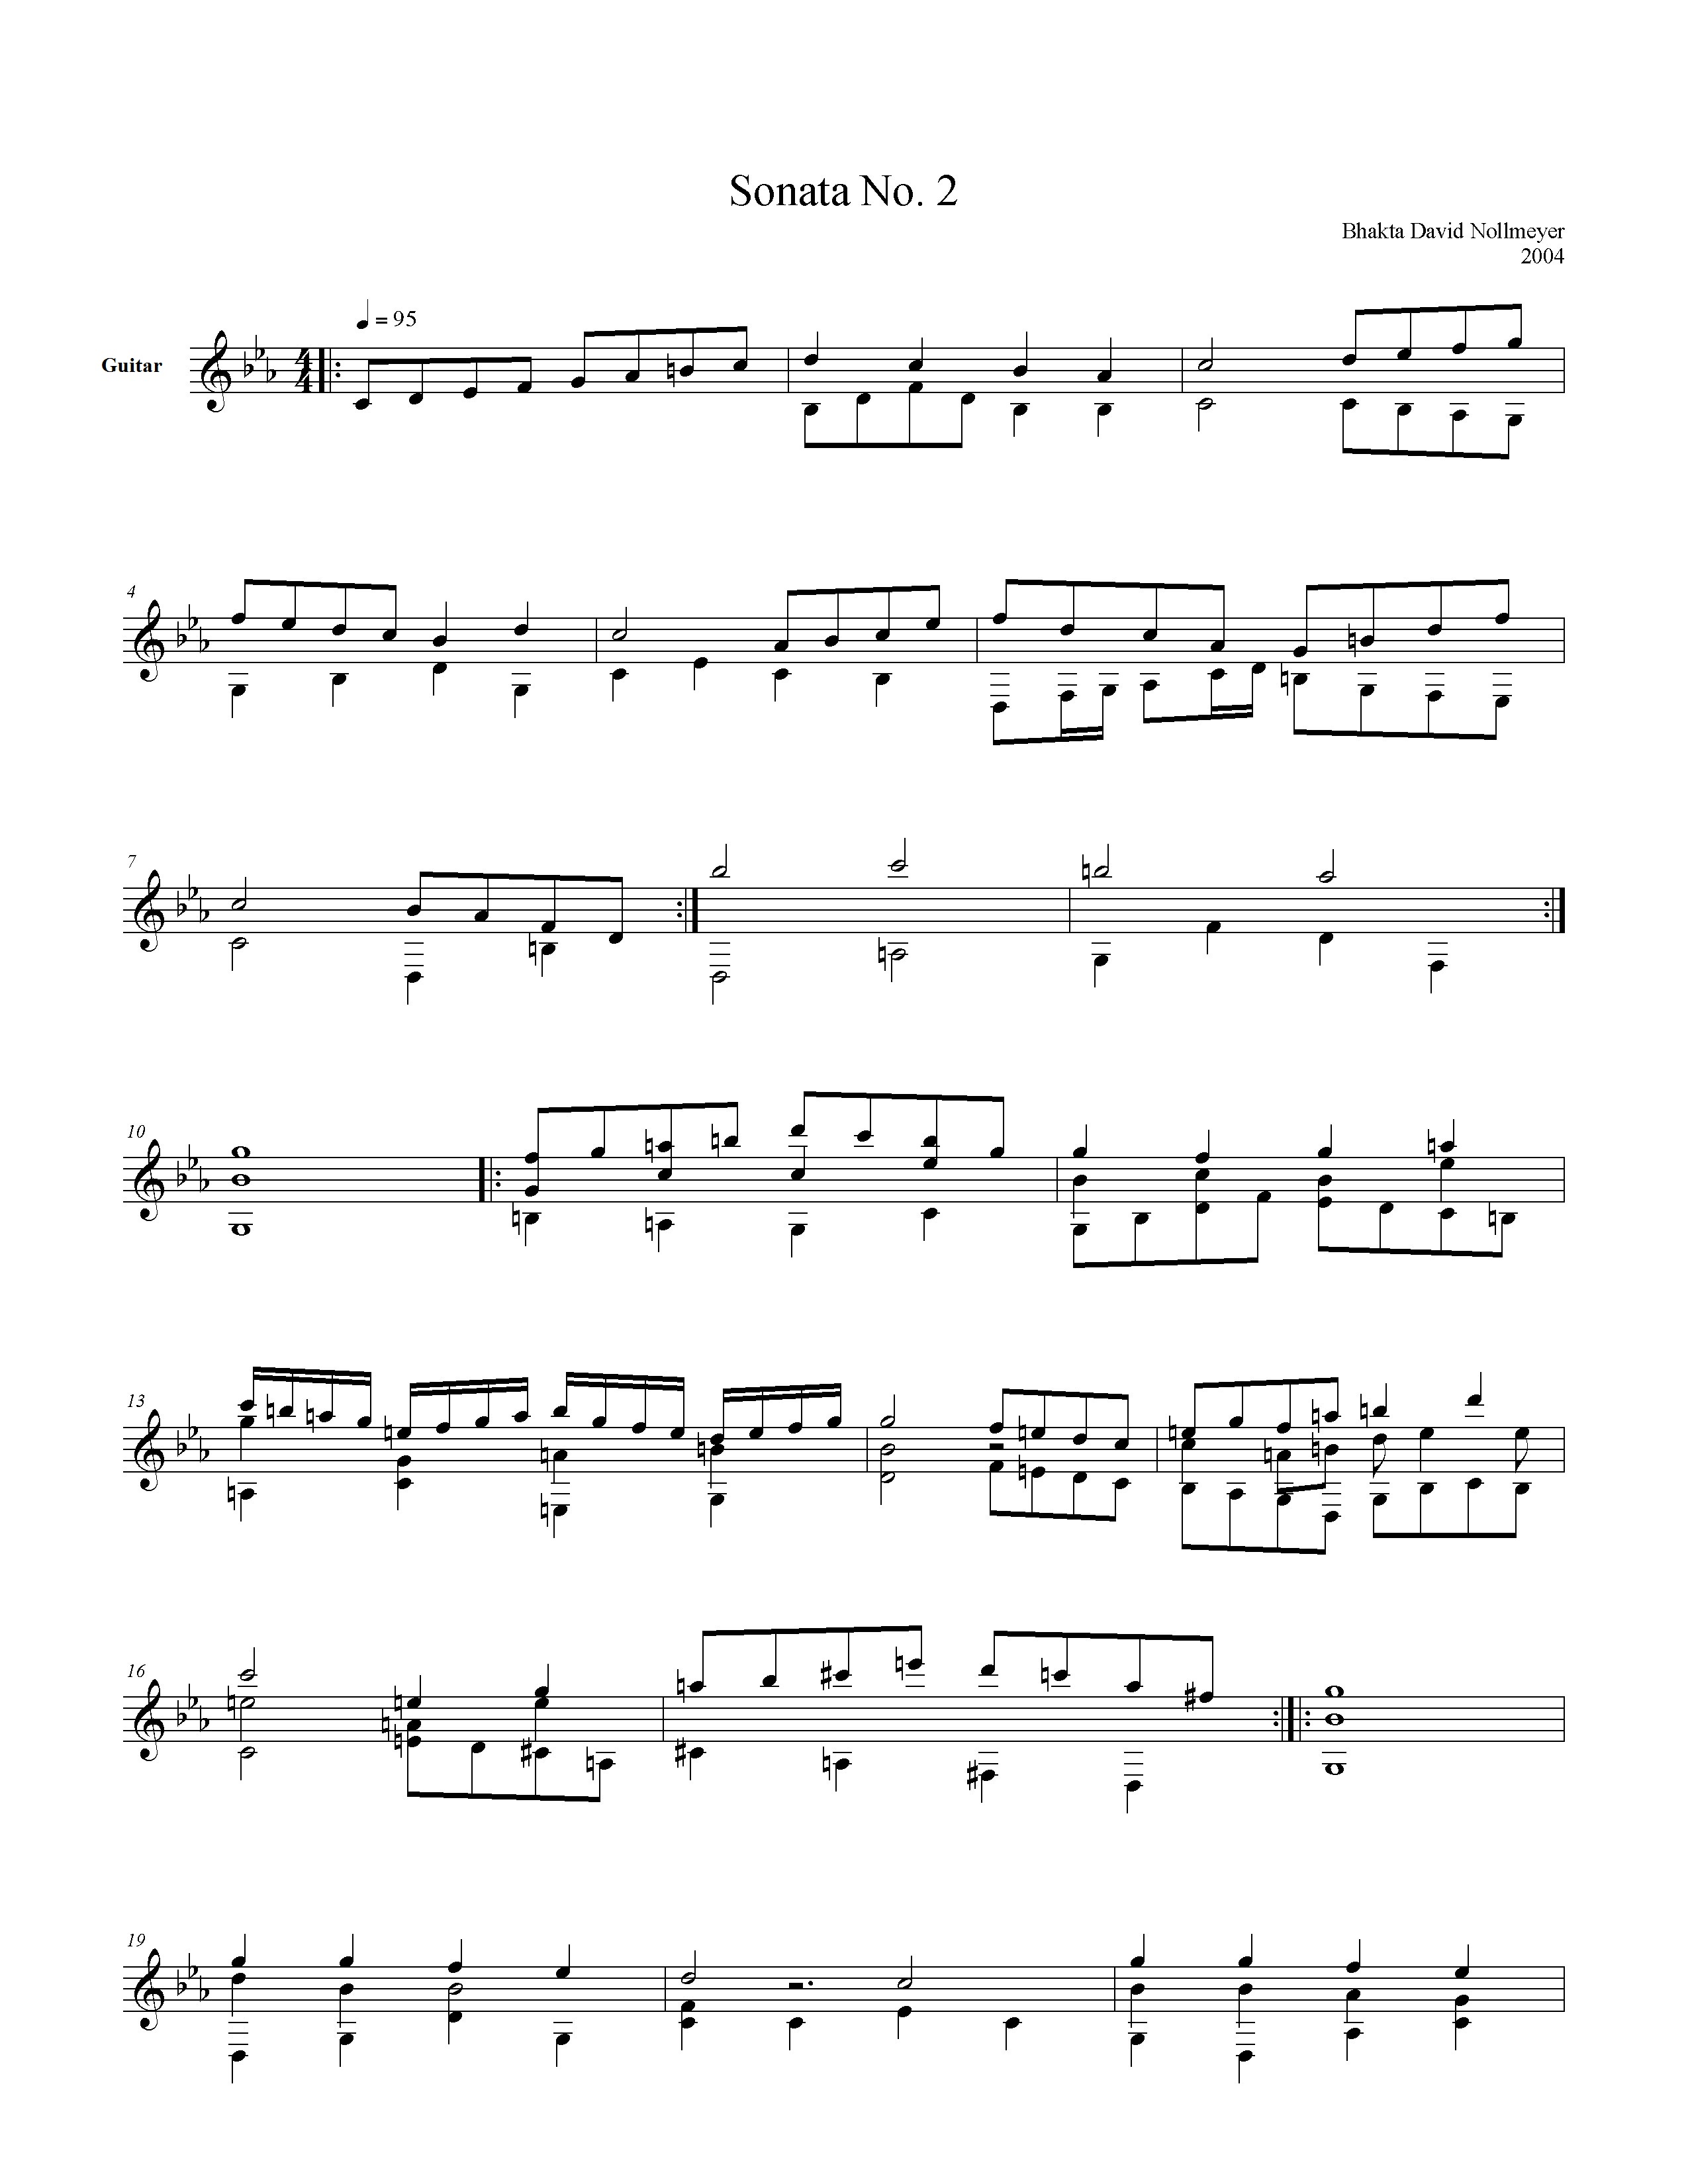 Sonata II page 1